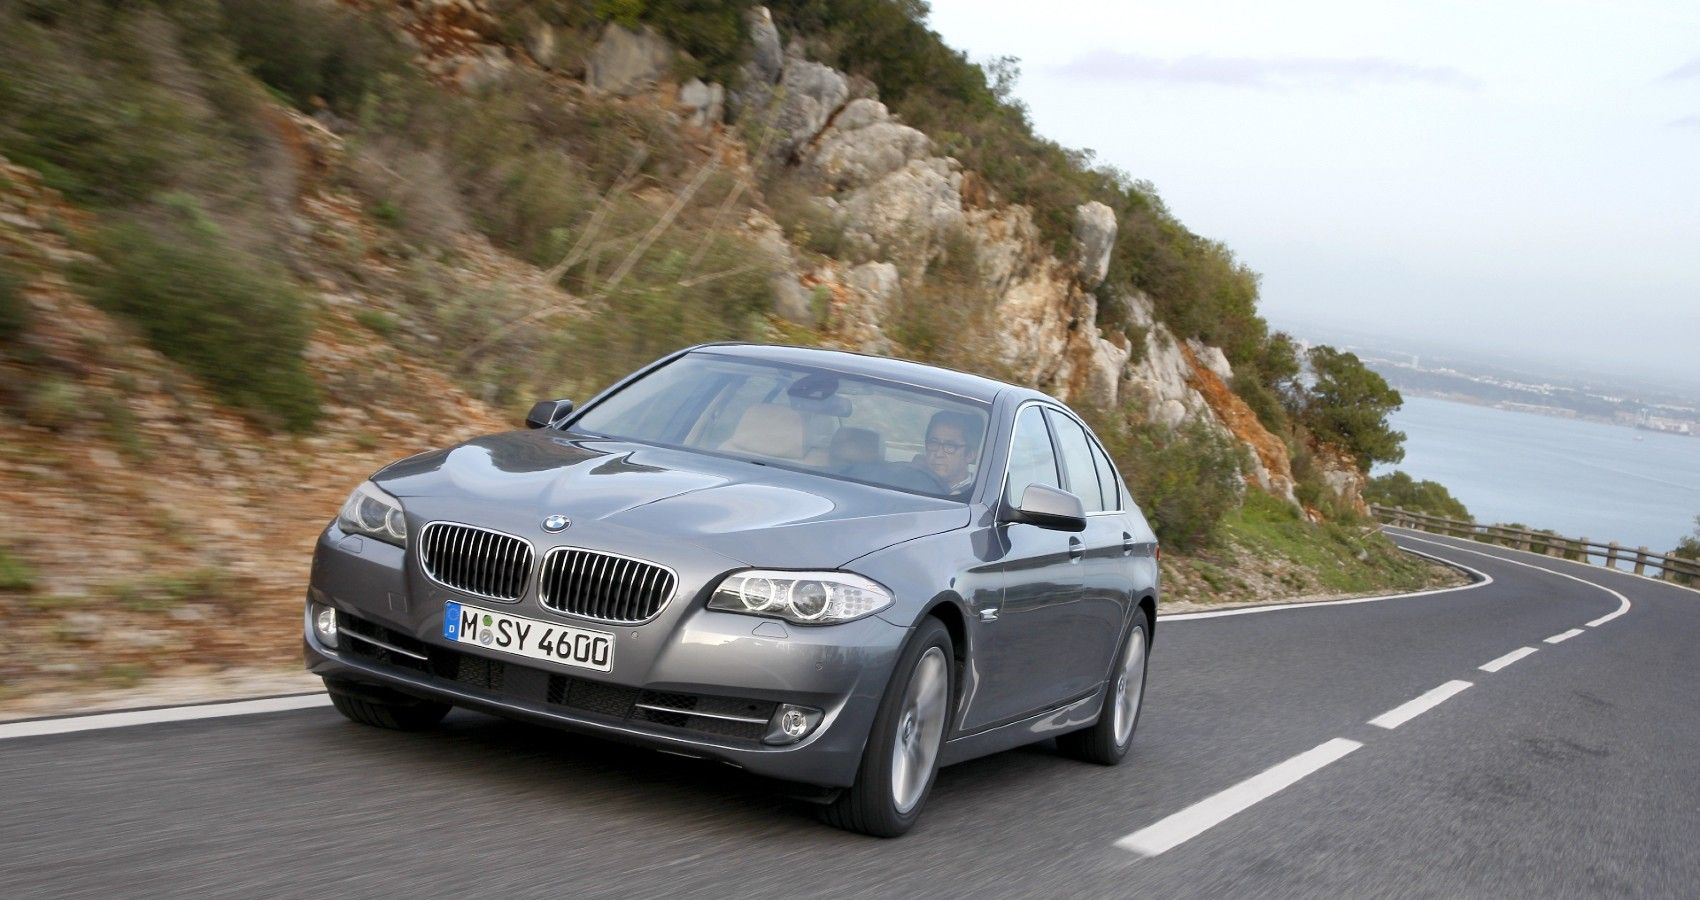 2010 f10 BMW 535i 3